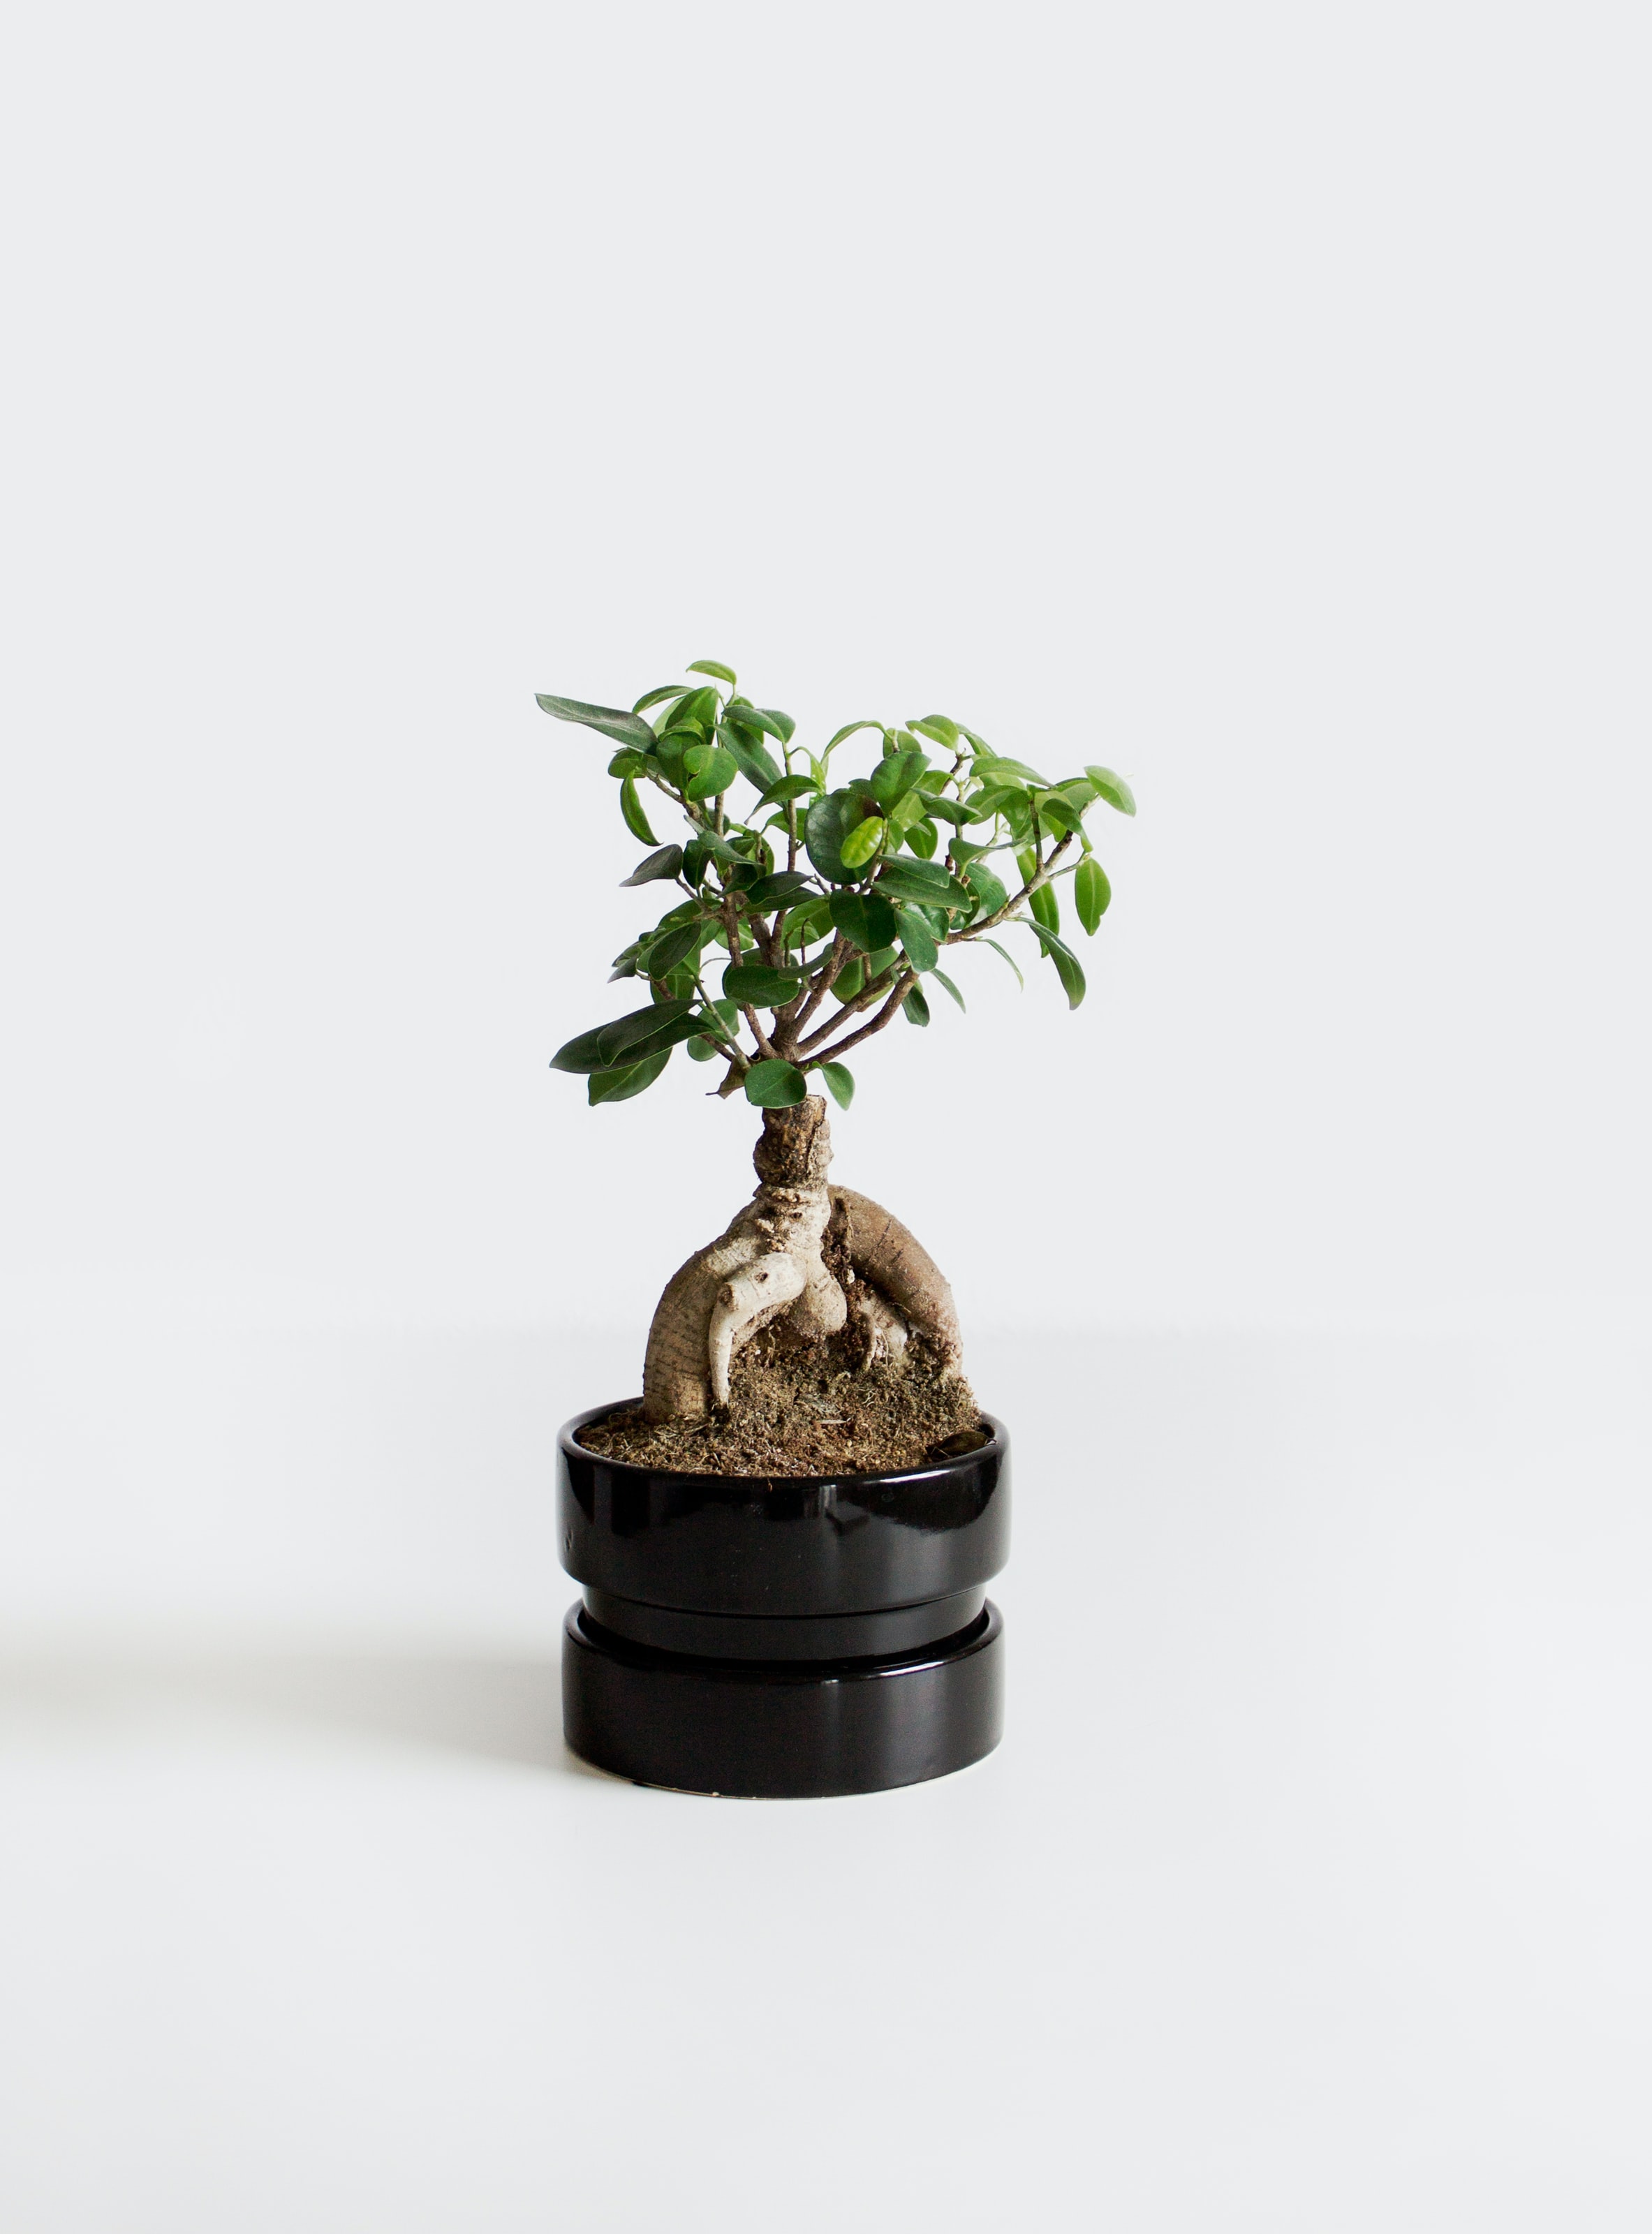 ¿Te han regalado un bonsái y no sabes por dónde empezar? ¡Te enseñamos los cuidados básicos! 🎁